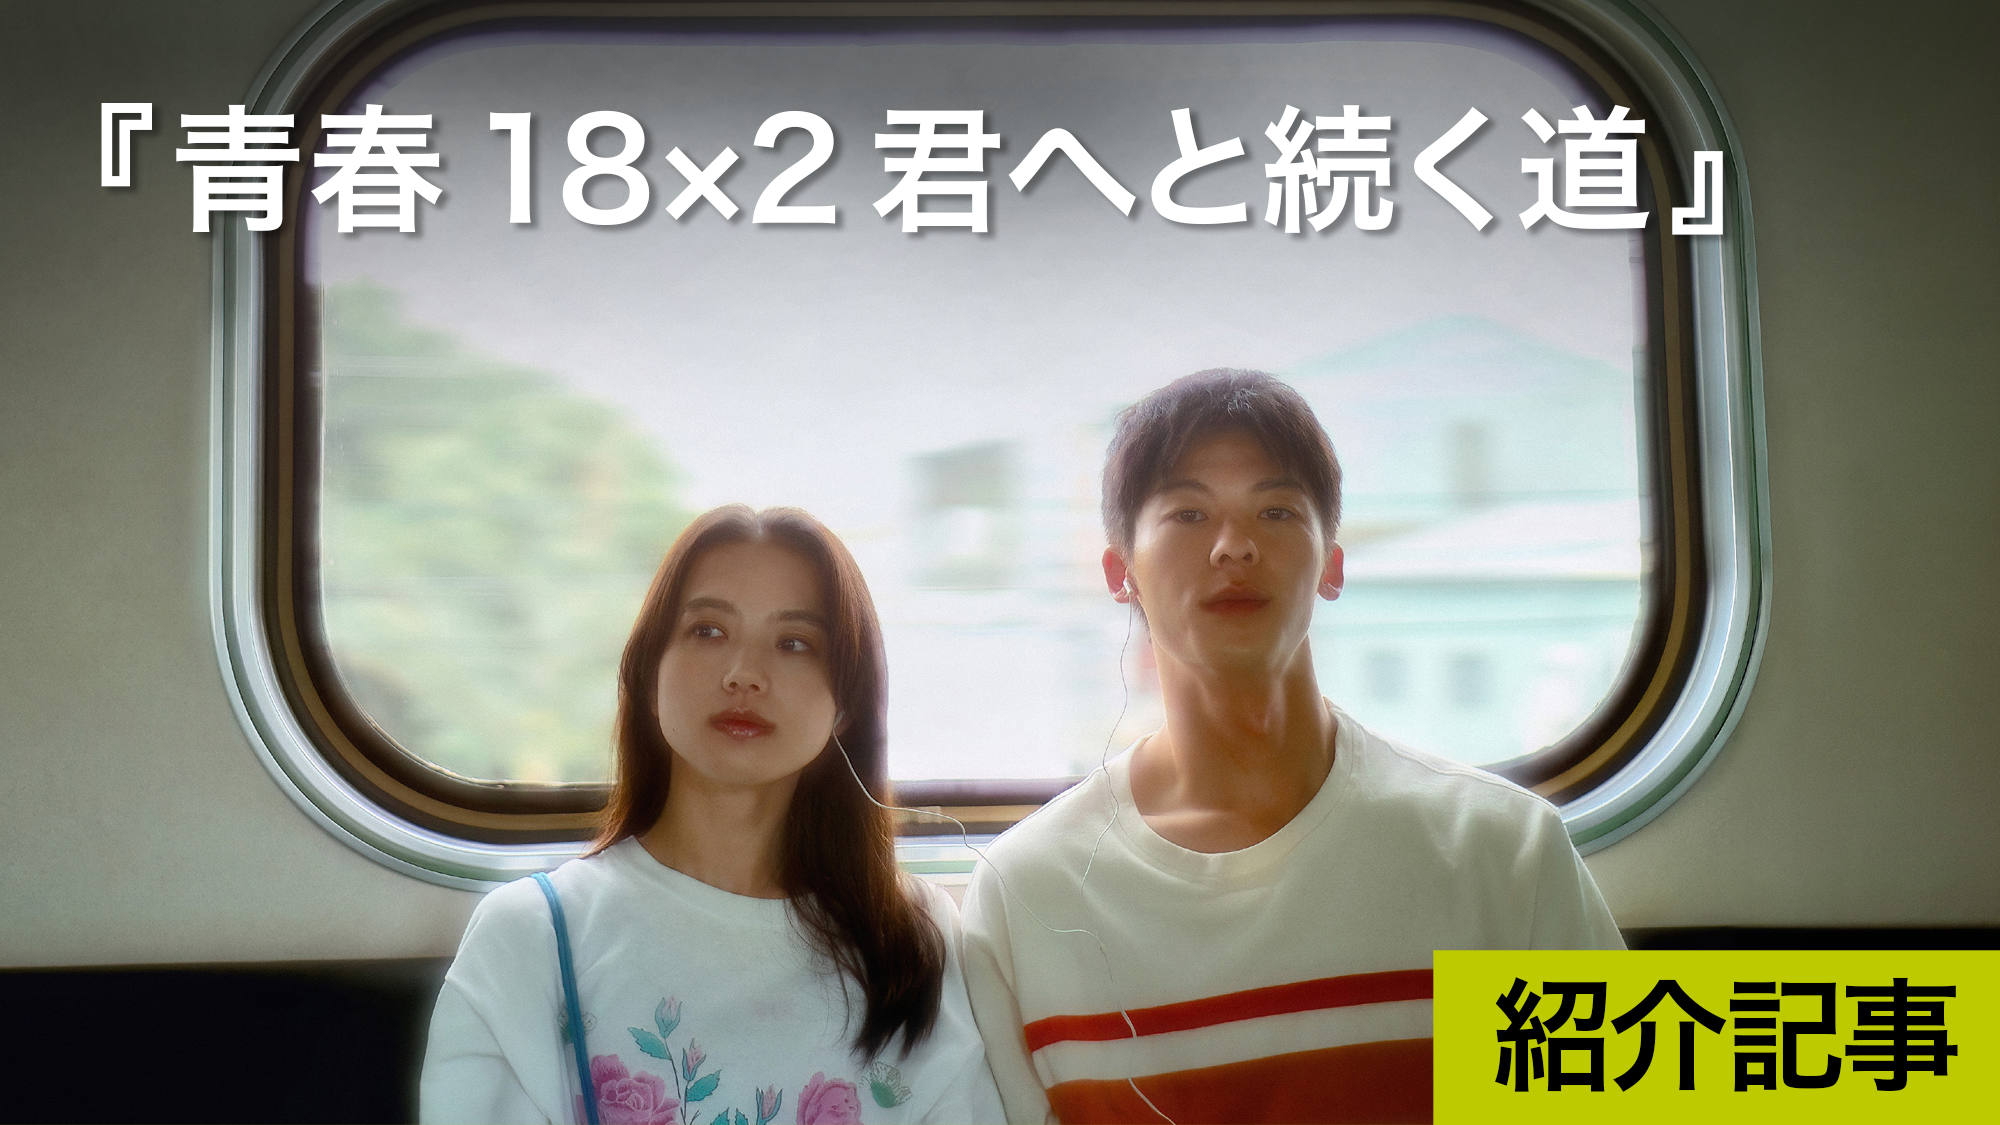 『青春18×2 君へと続く道』日本台湾合作の切なさ究極のラブストーリー